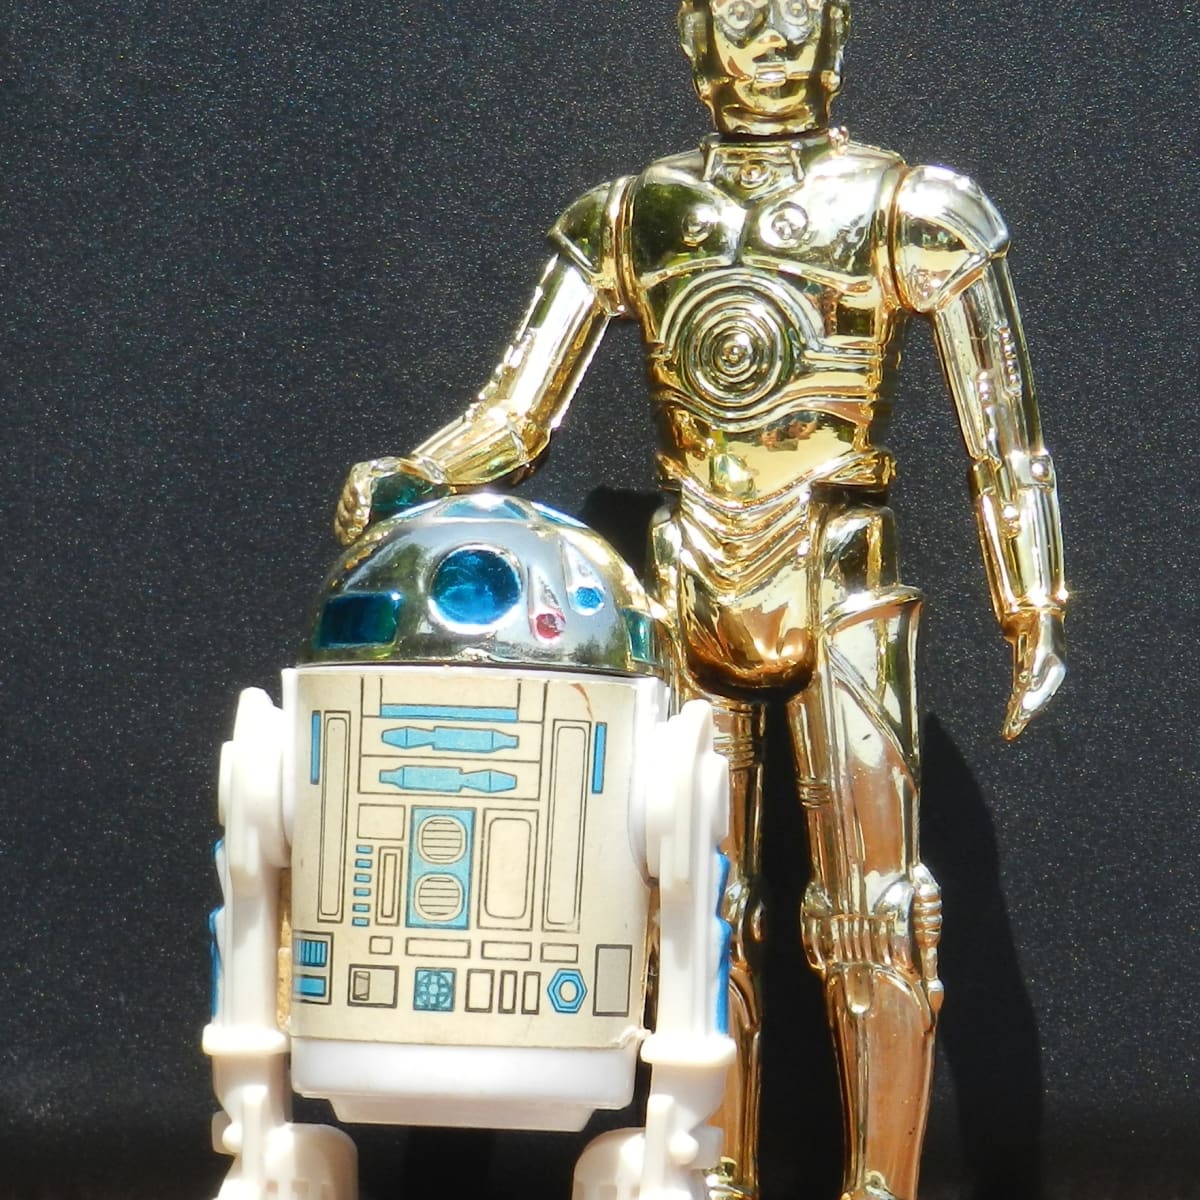 Original Vintage Kenner Star Wars Action Figures - HobbyLark